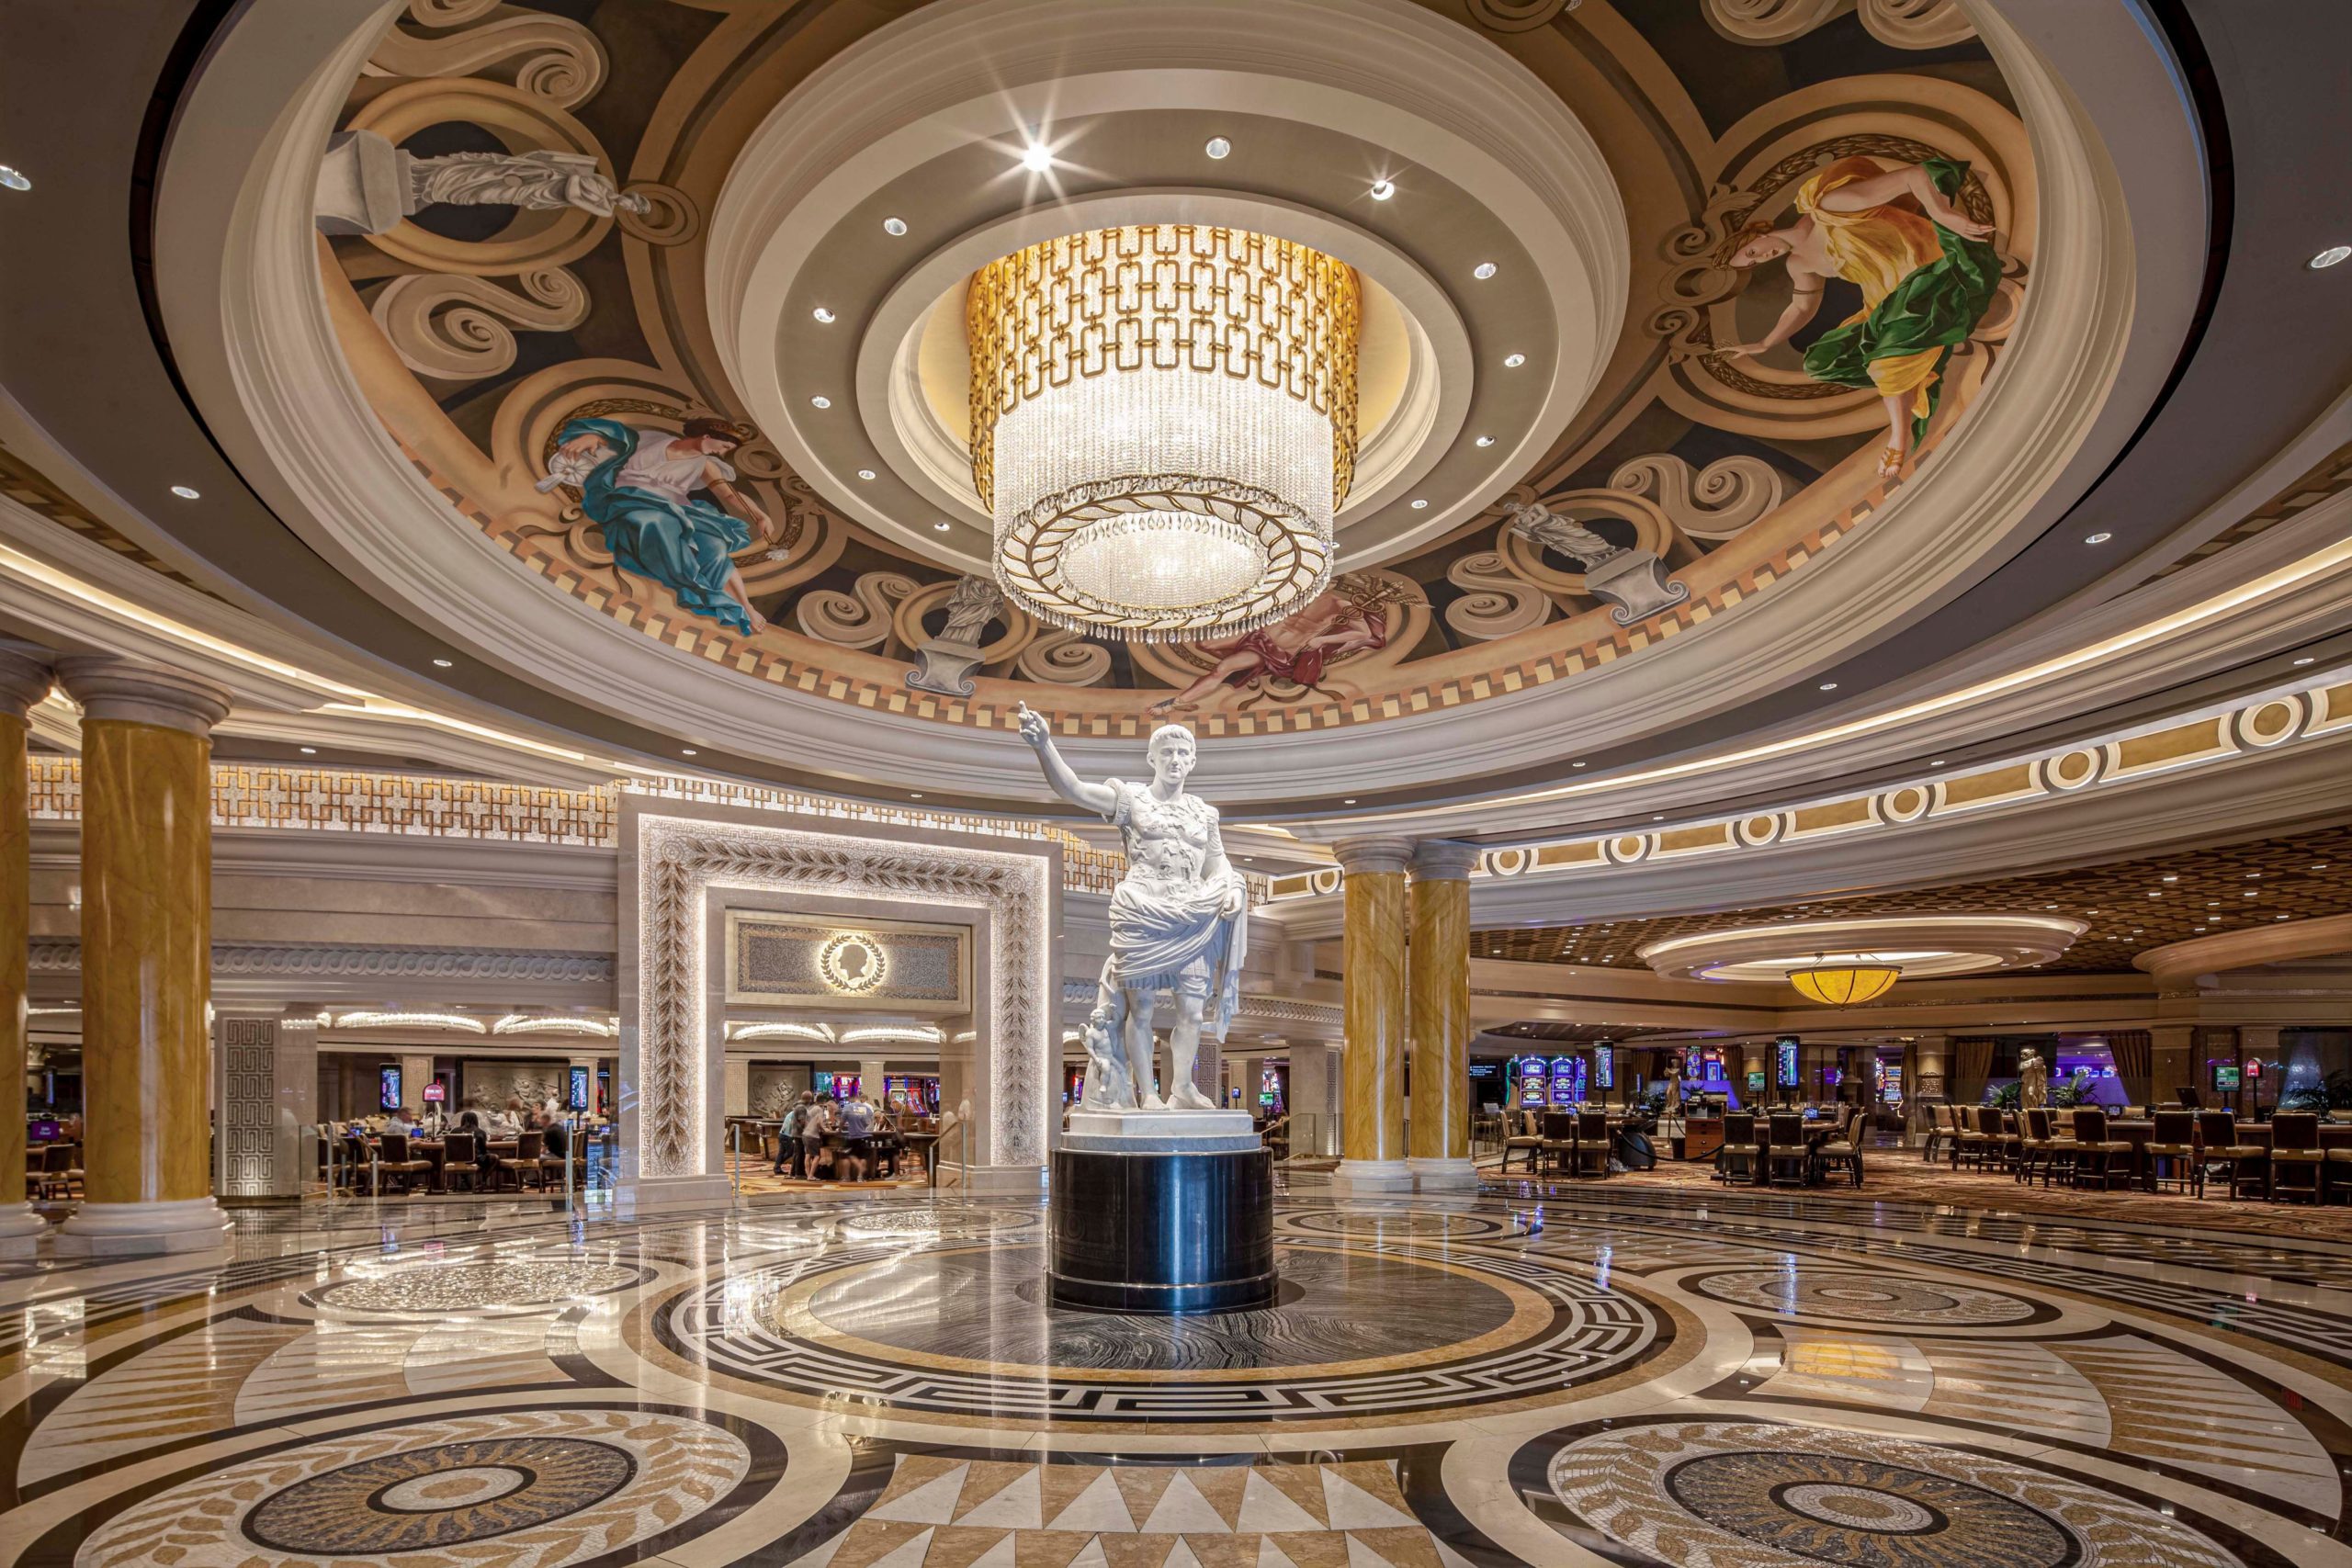 Caesar's palace Las Vegas